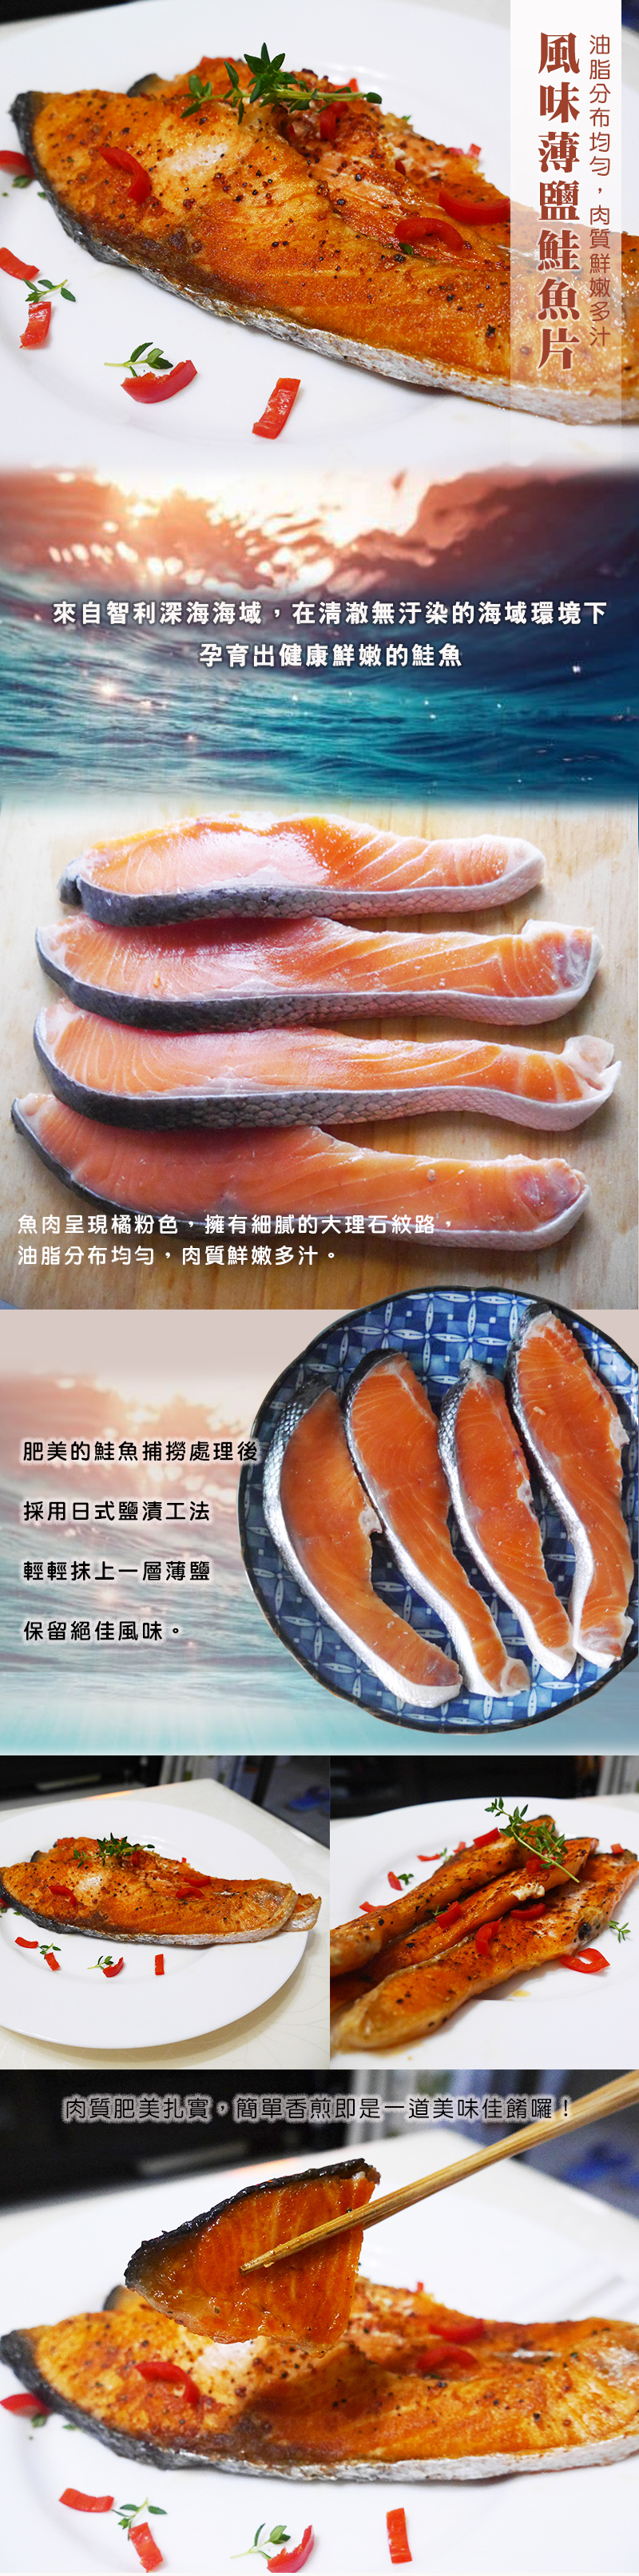 薄鹽鮭魚.jpg